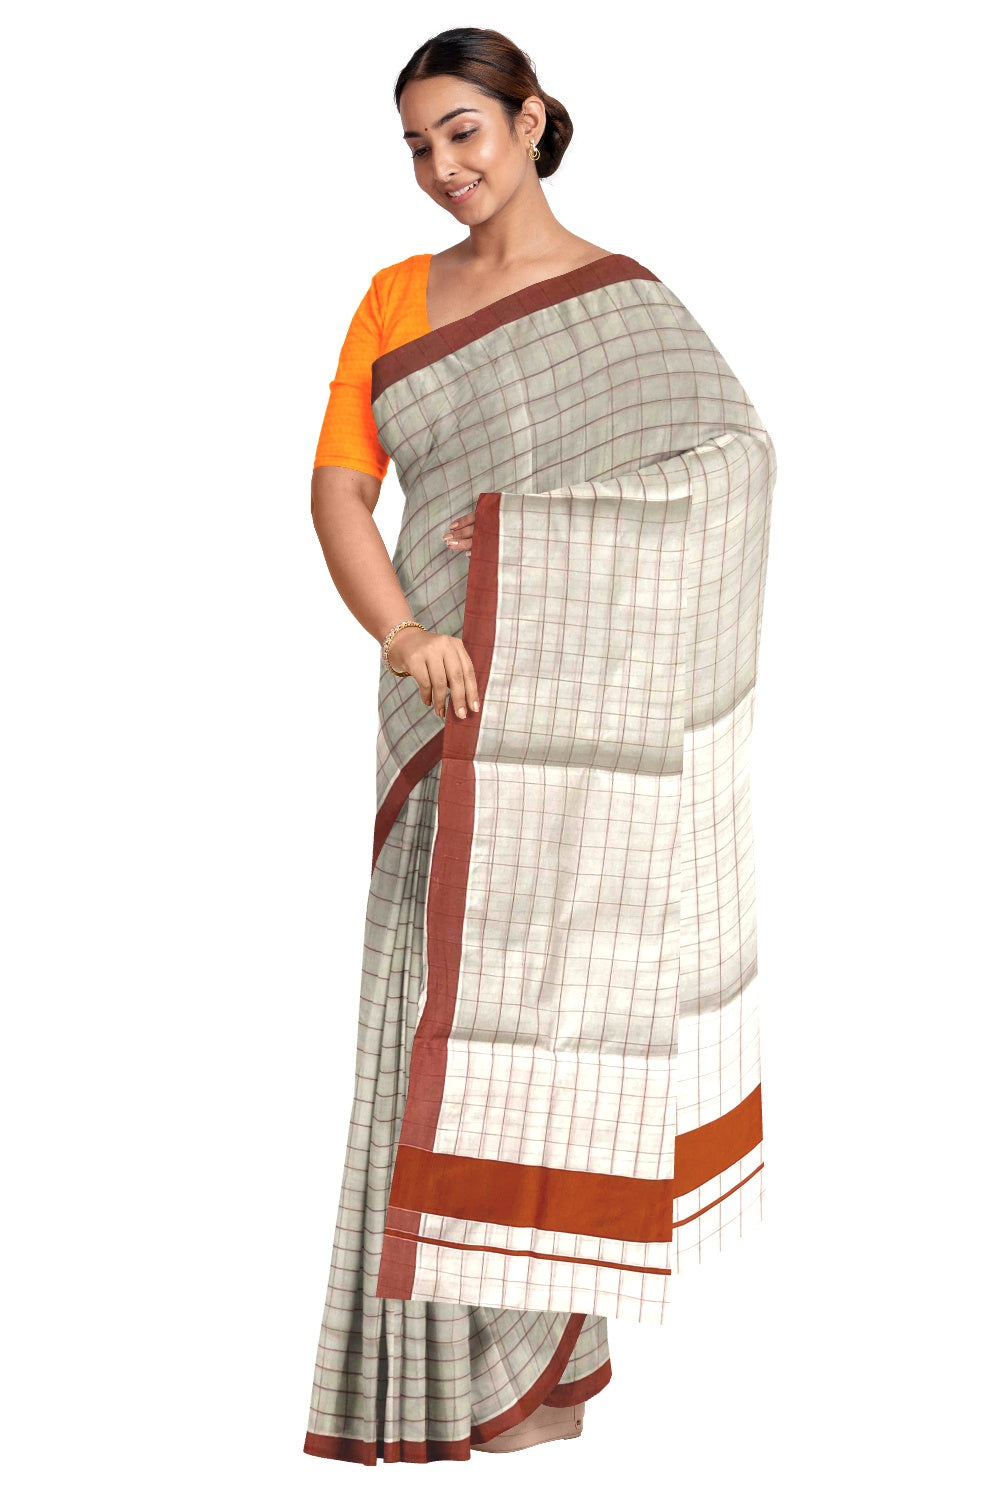 Kerala Pure Cotton Orange Woven Check Saree with 3 inch Border